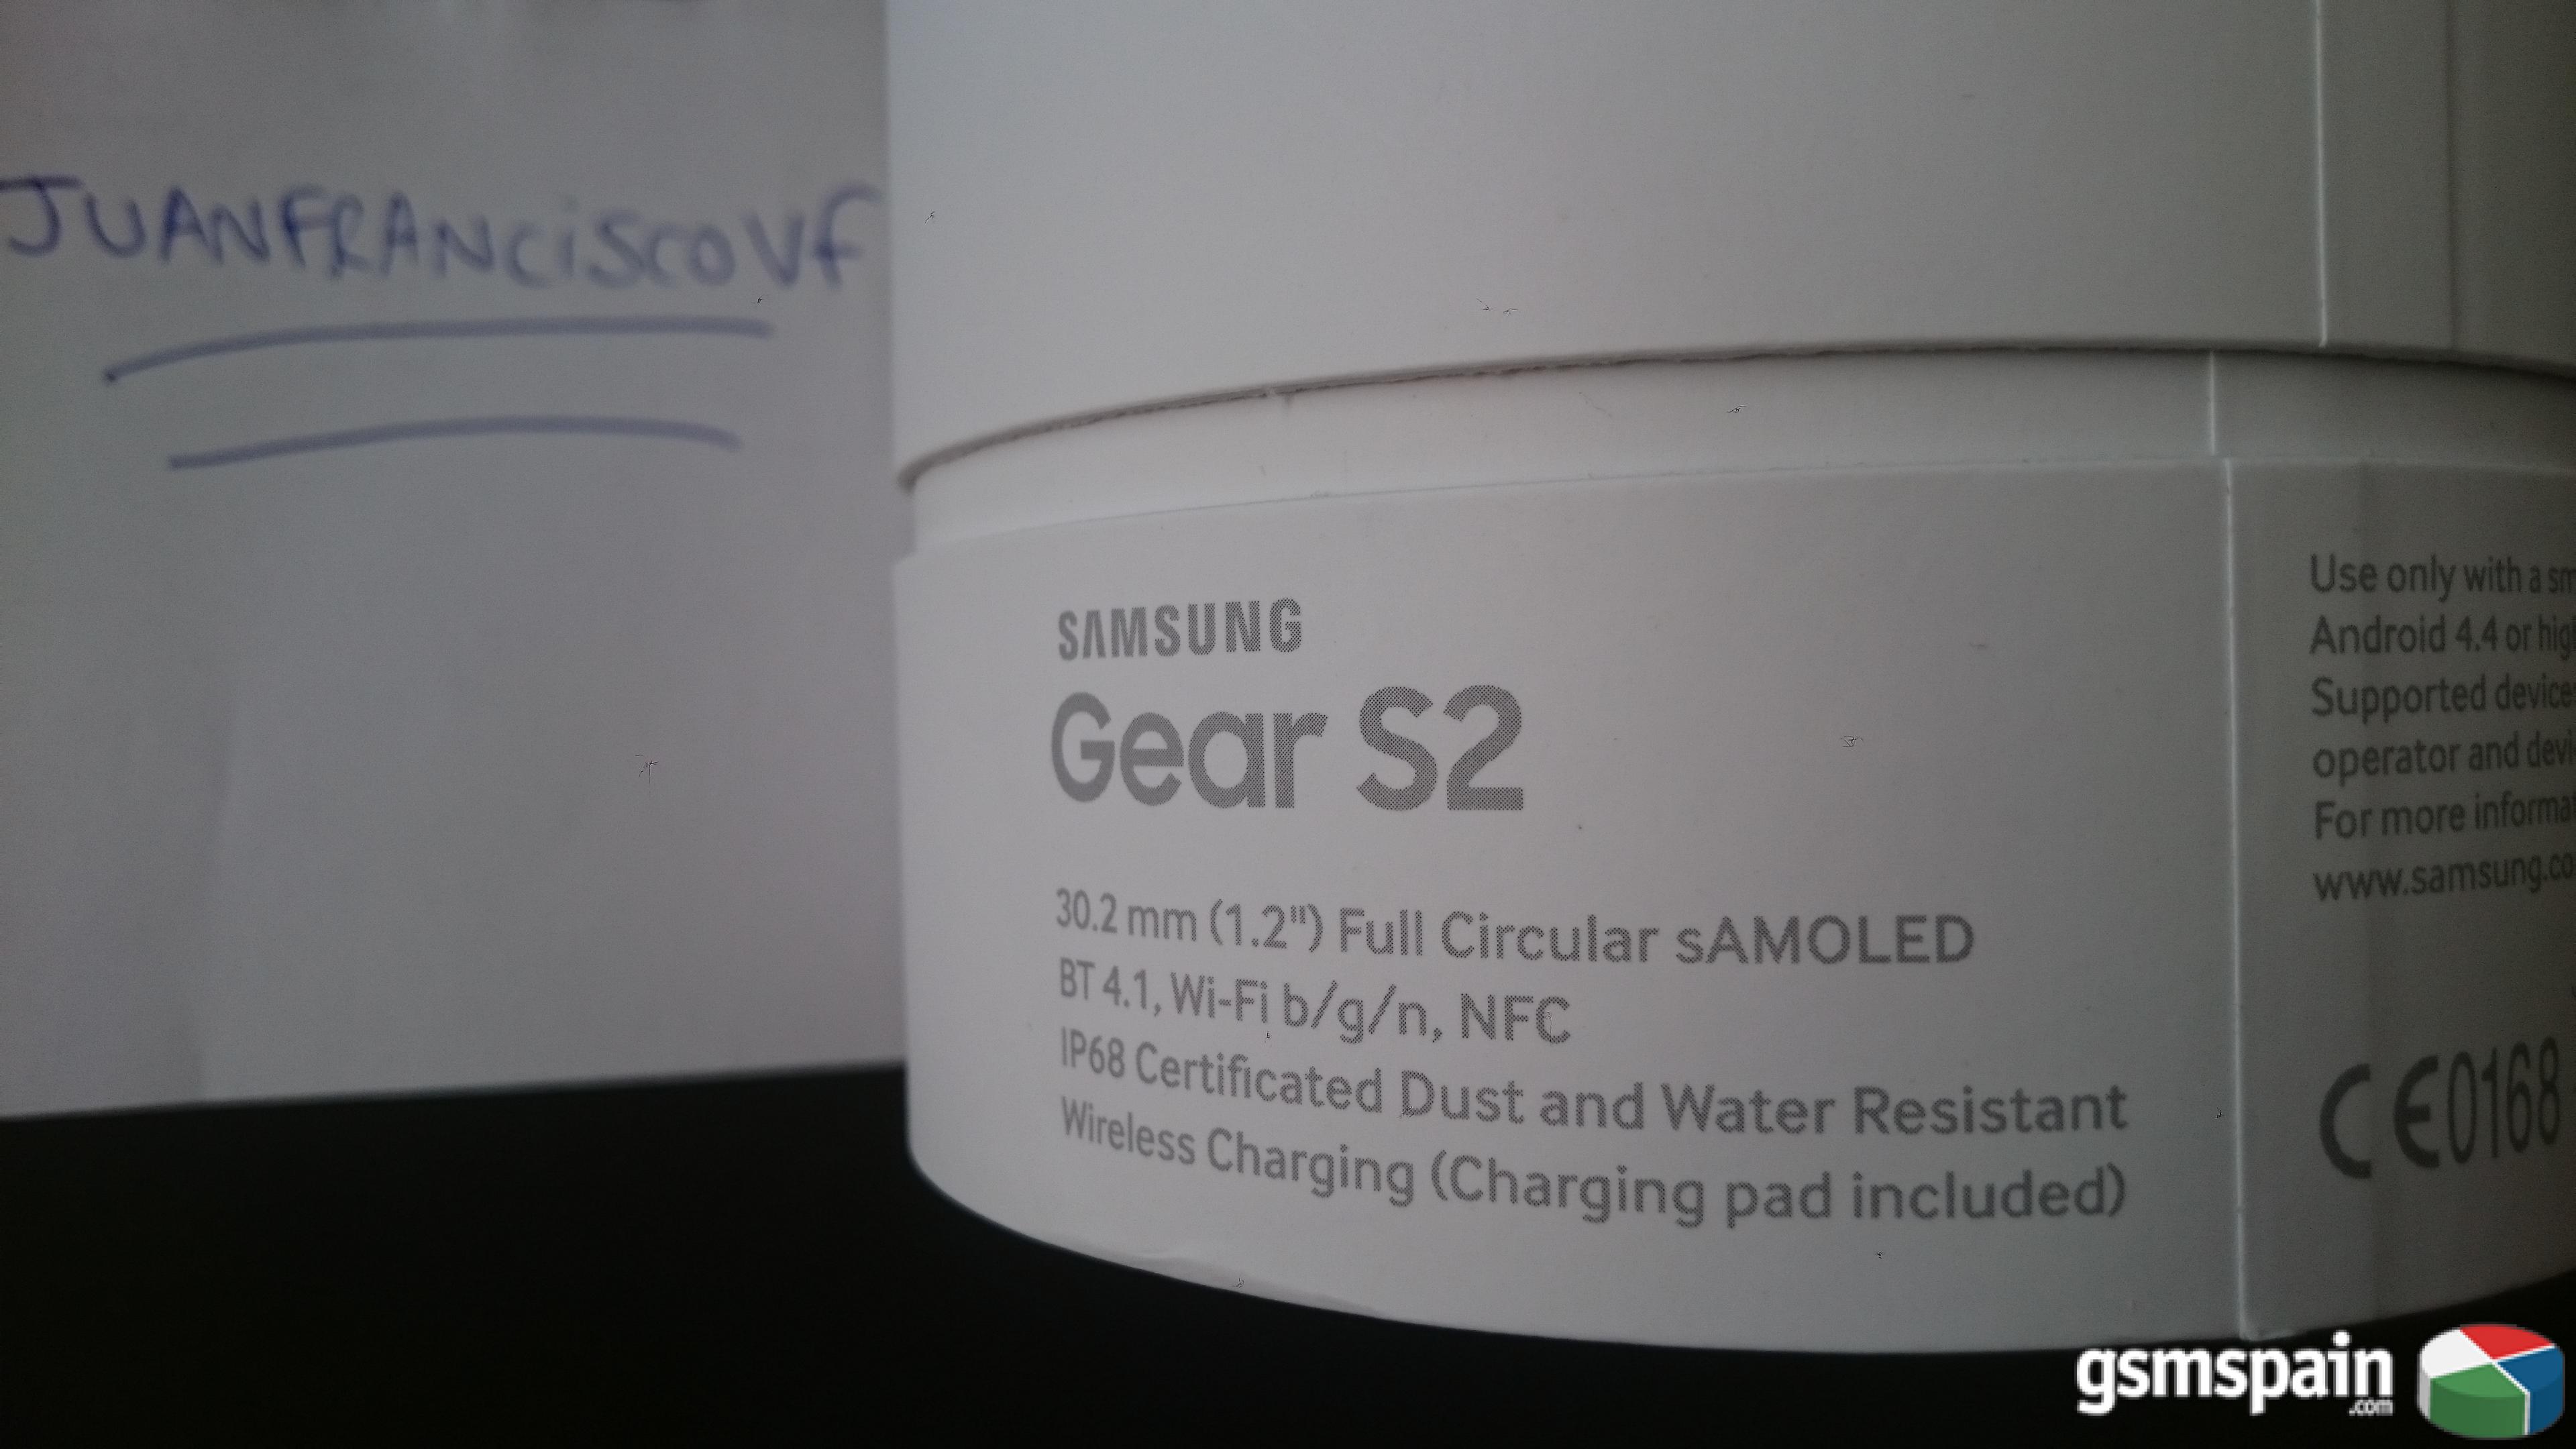 [VENDO] Reloj Samsung Gear Sport S2 Smartwatch Precintado 234 Euros